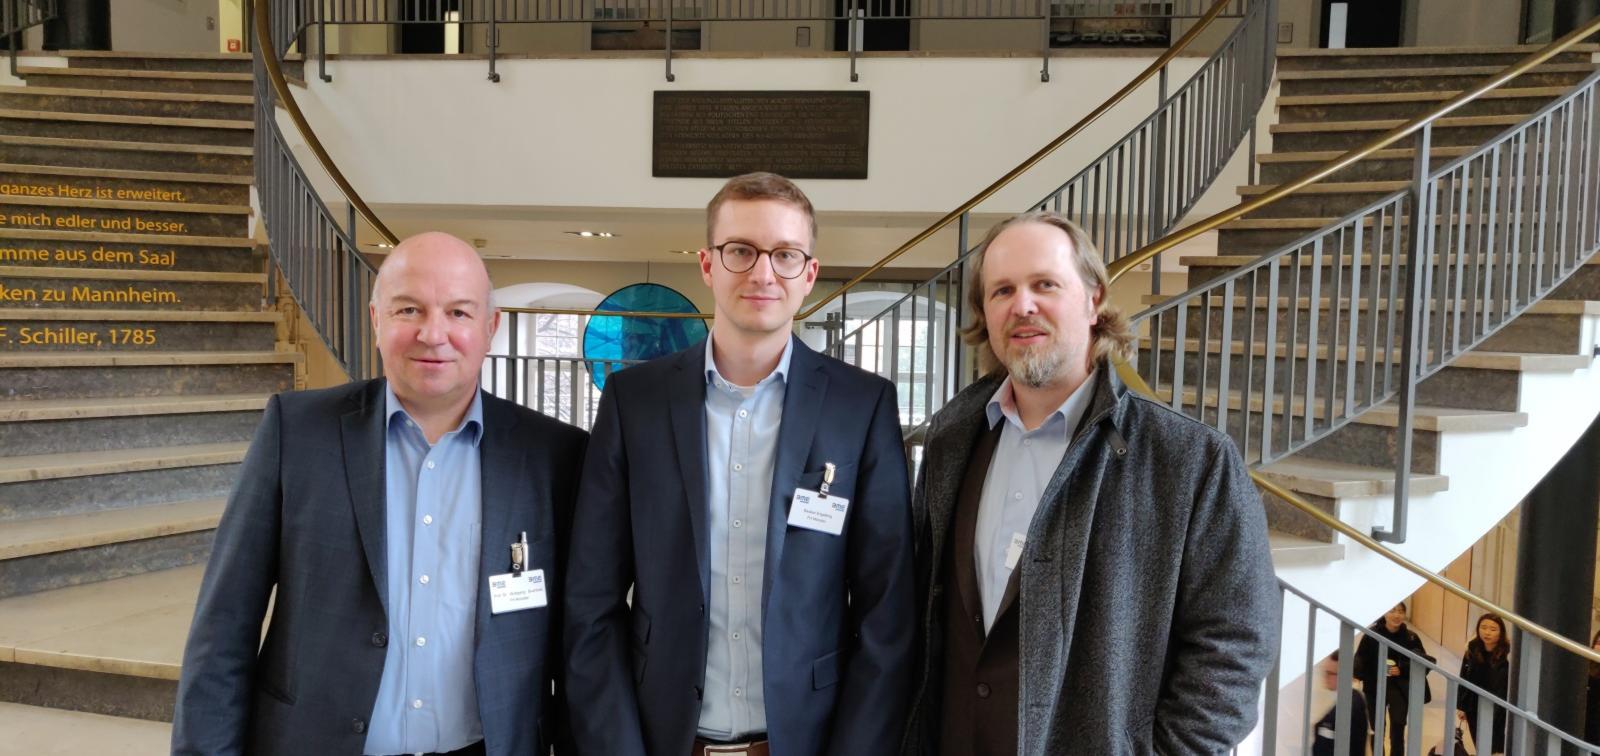 Prof. Dr. Wolfgang Buchholz von der FH Münster, Gewinner Bastian Engelking (Mitte) und Dr. Frank Köhne von der viadee Unternehmensberatung AG